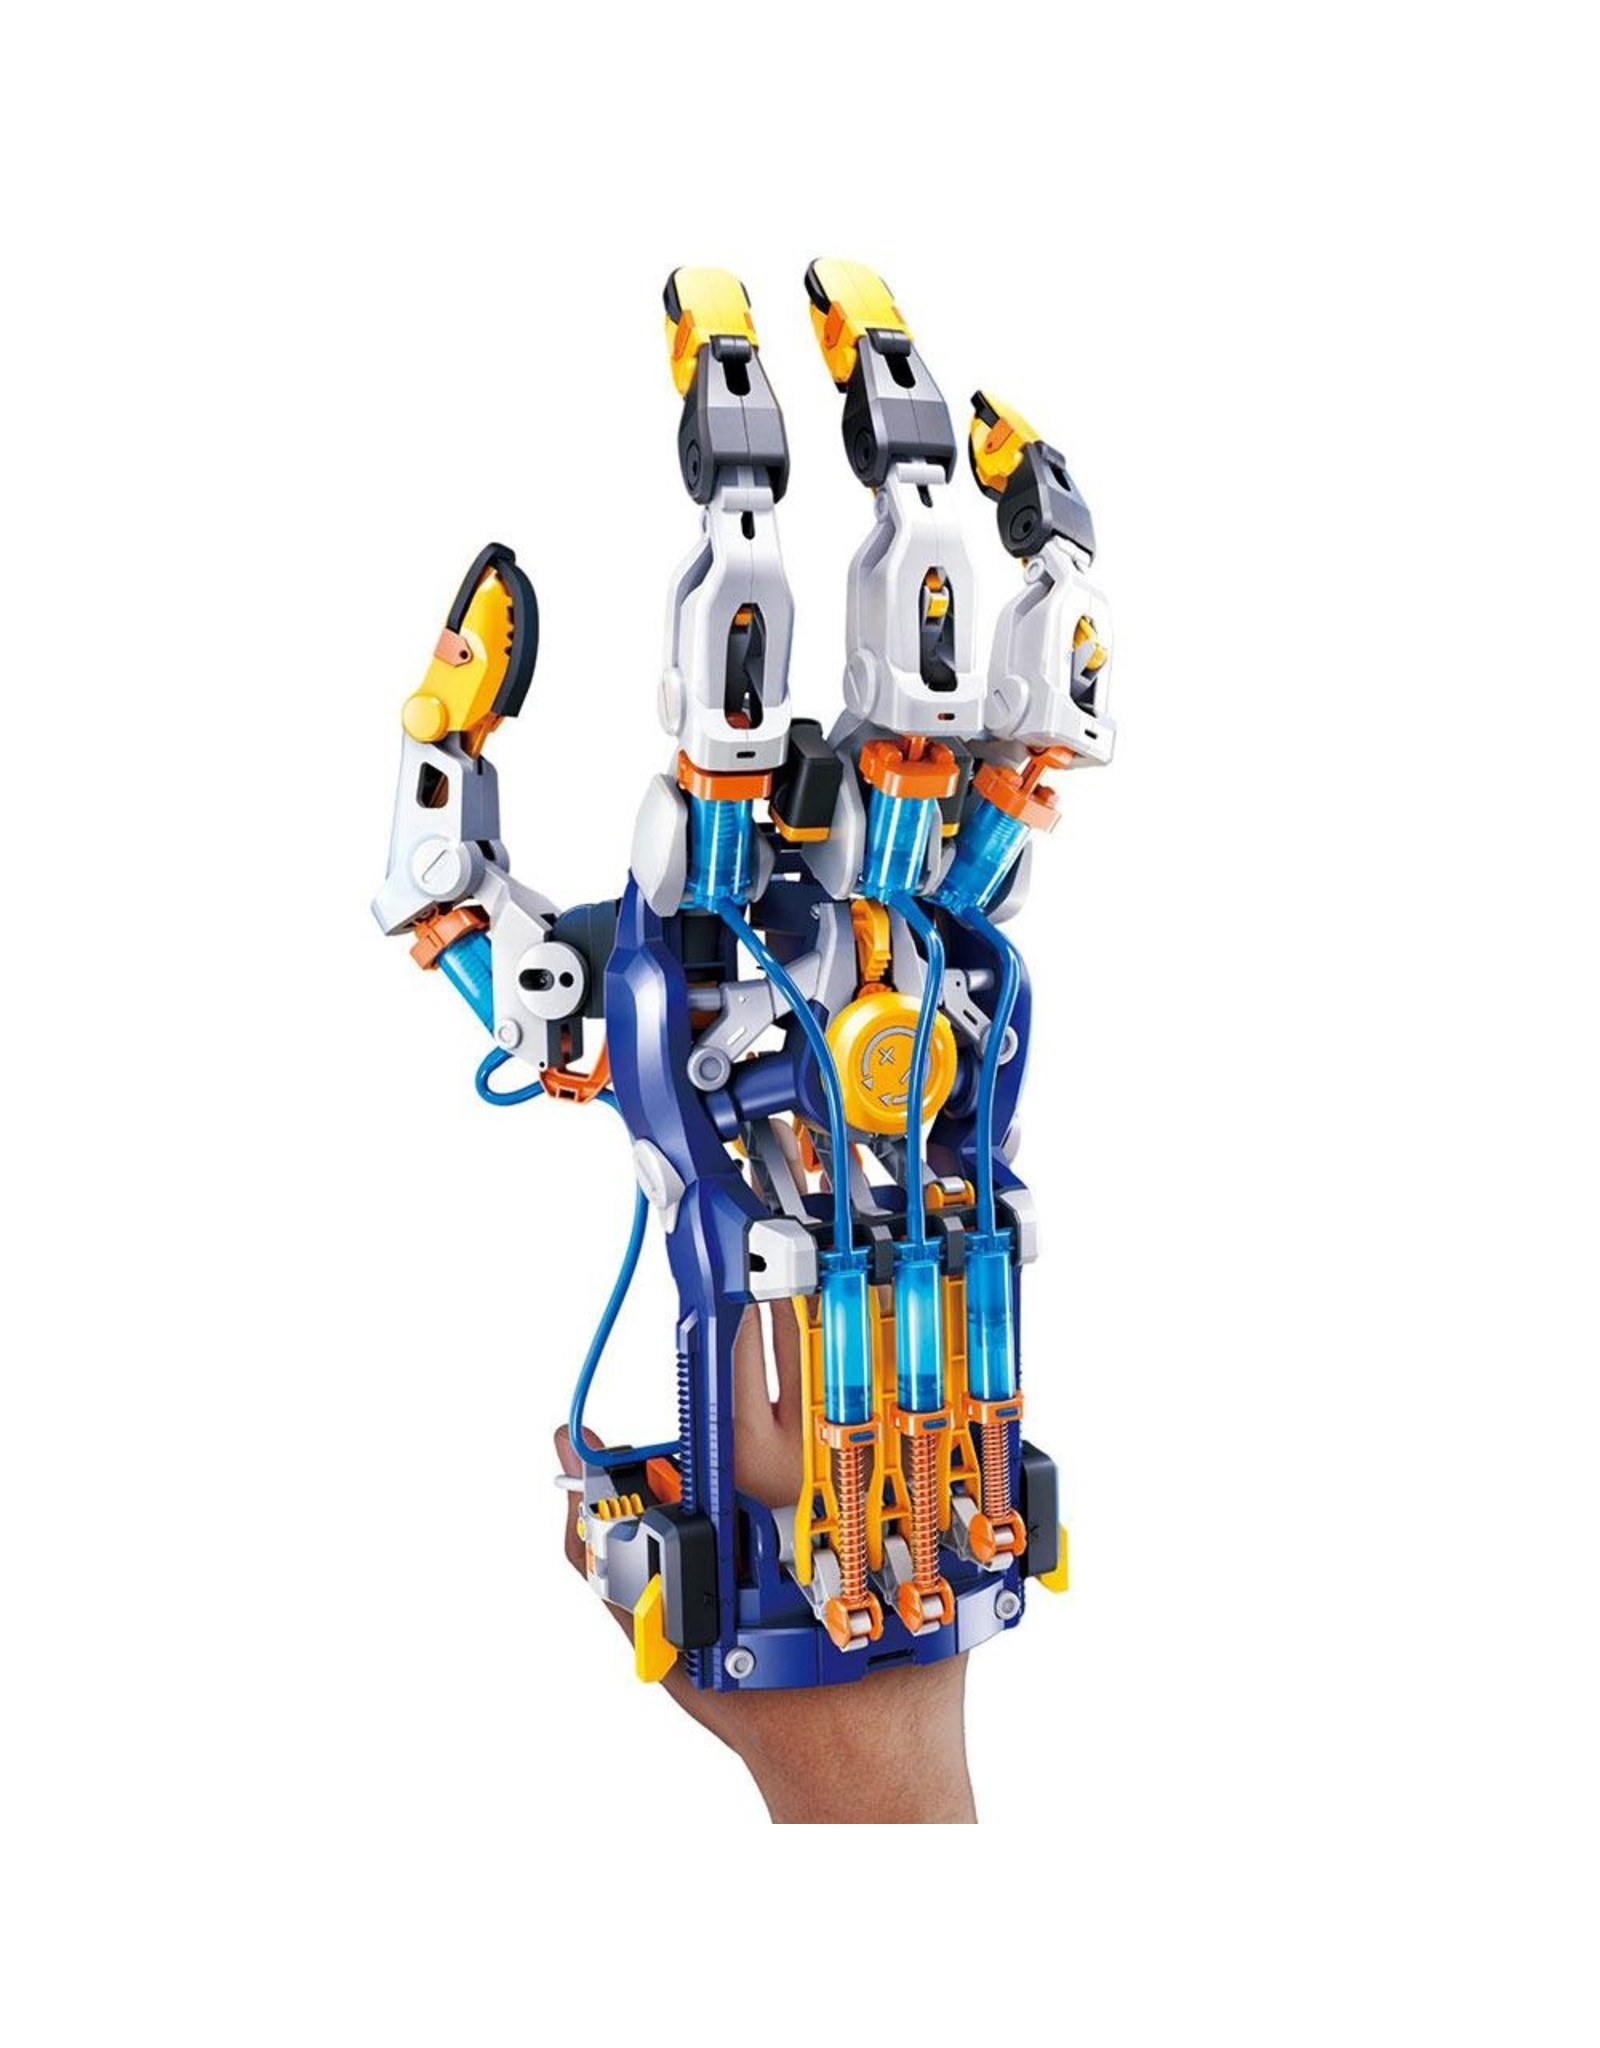 Thames & Kosmos Mega Cyborg Hand